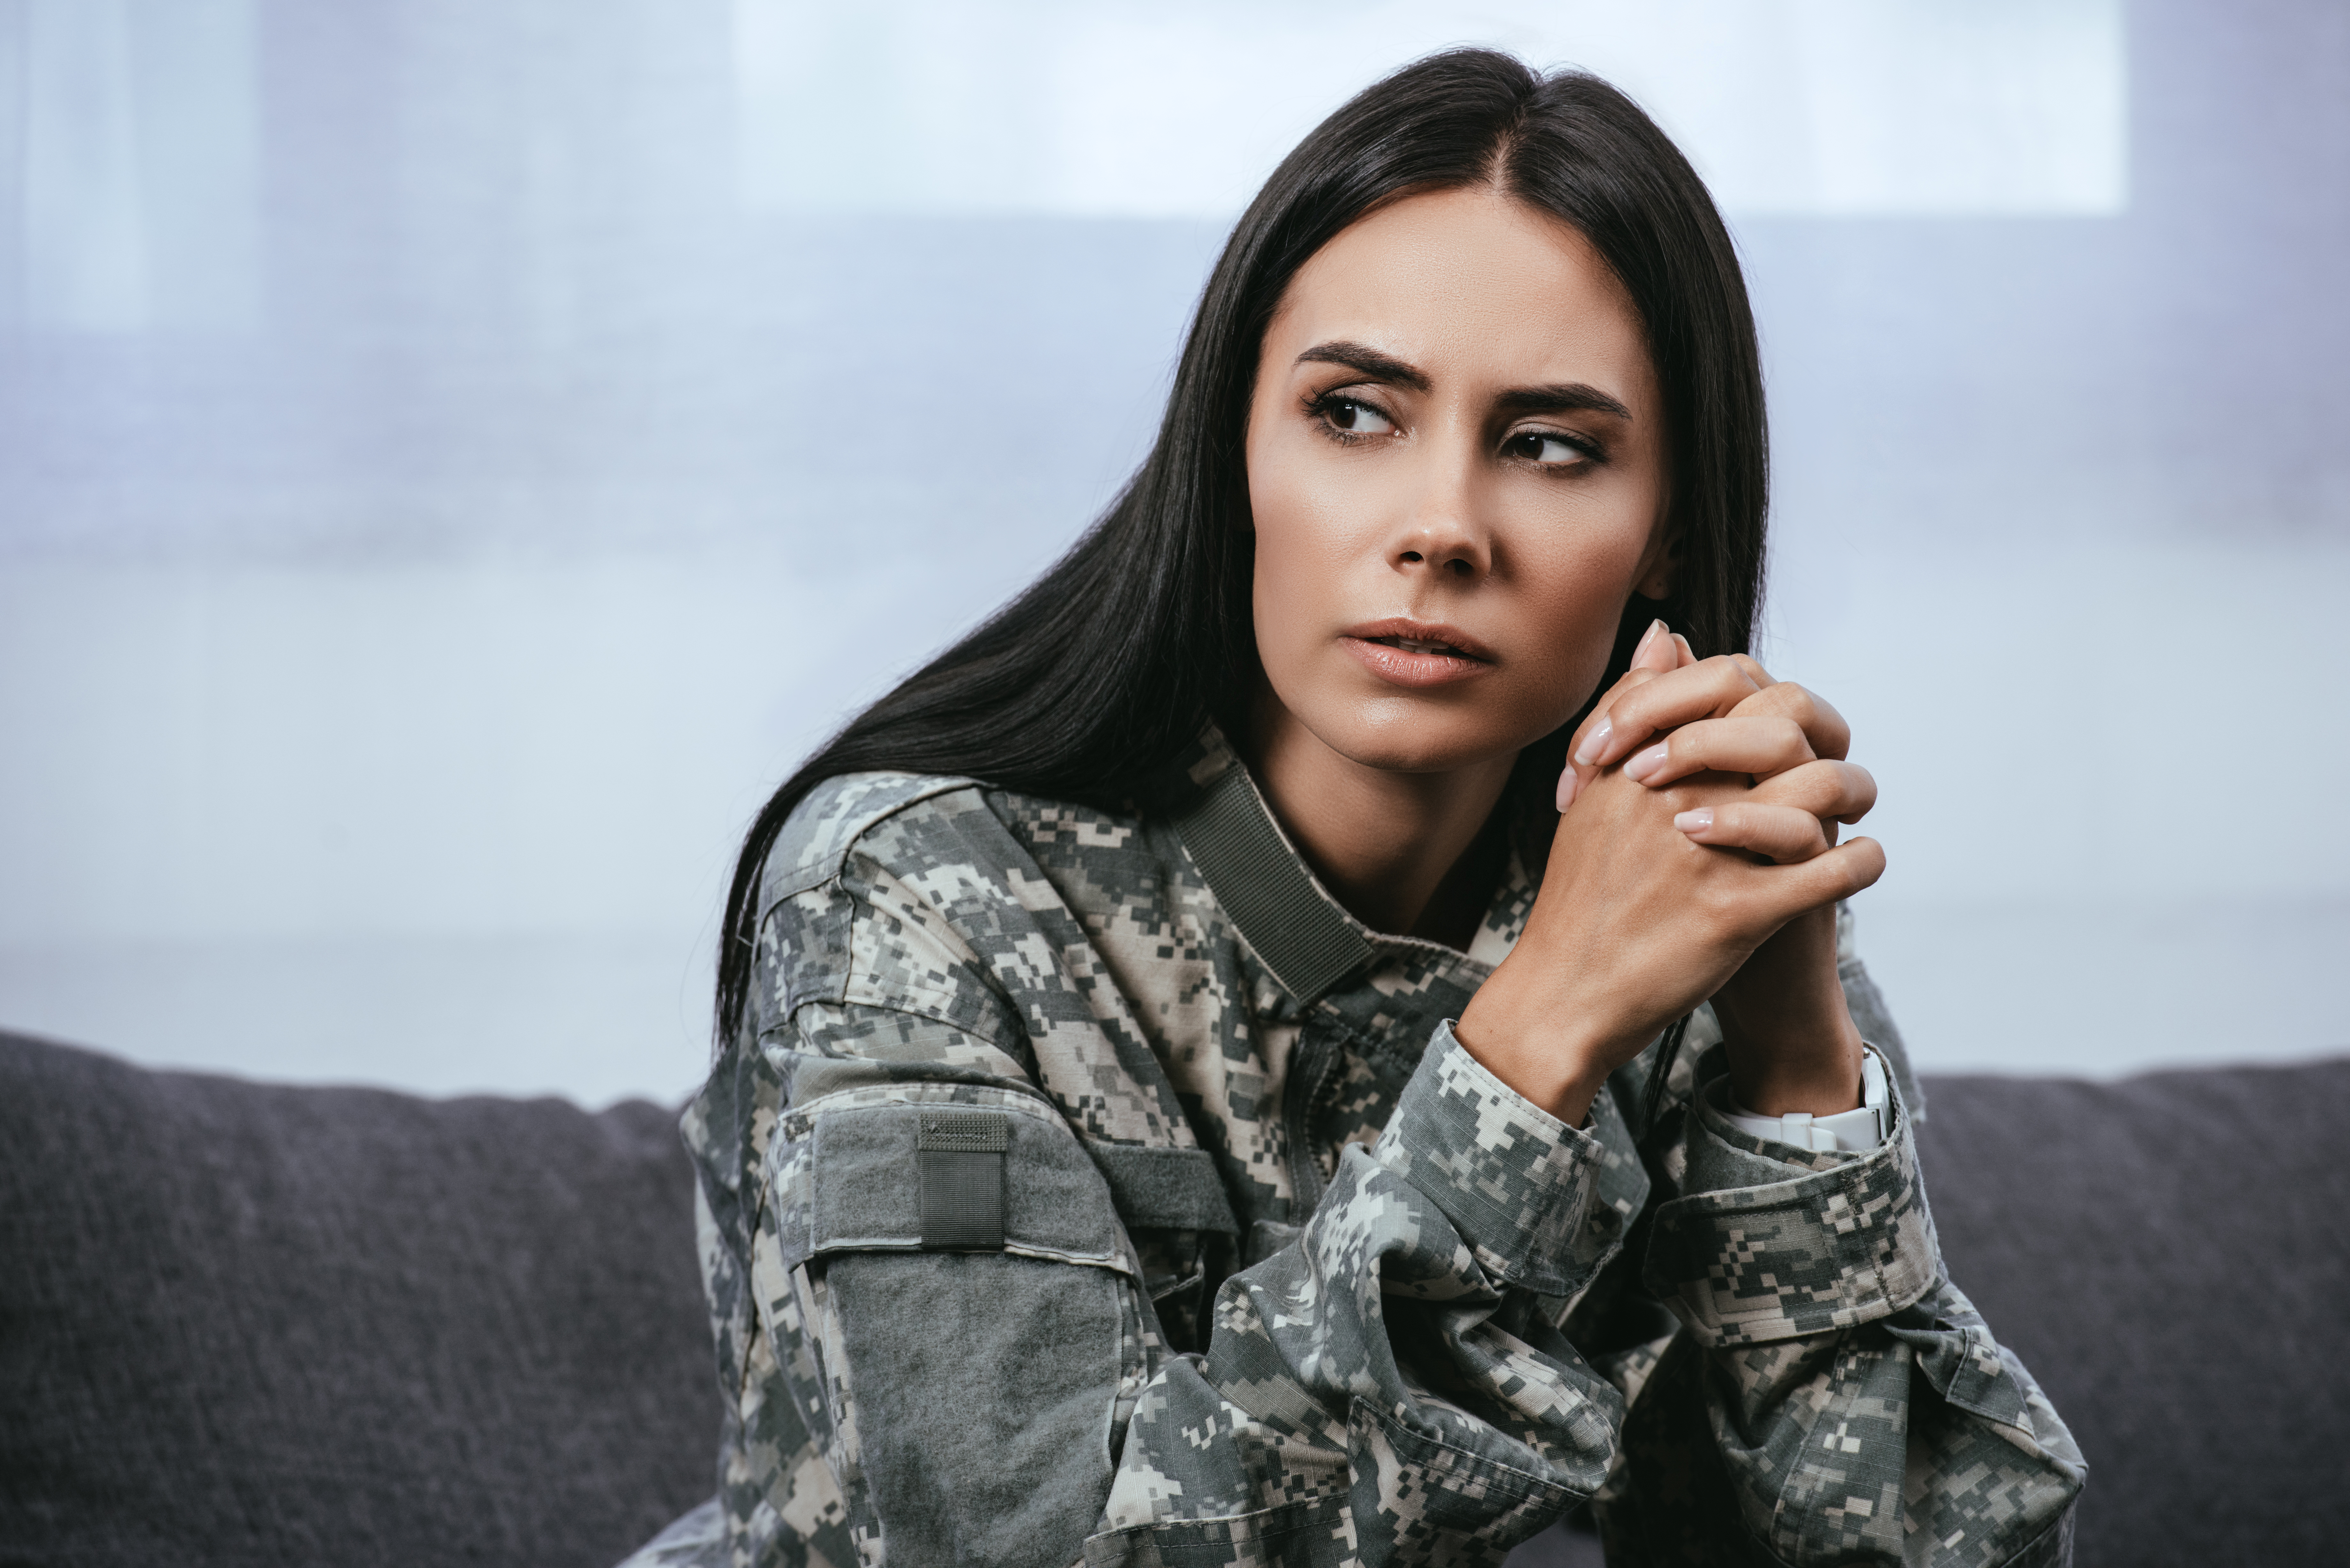 Nærbillede af eftertænksom kvindelig soldat i militæruniform med ptsd, der sidder i sofaen og kigger væk